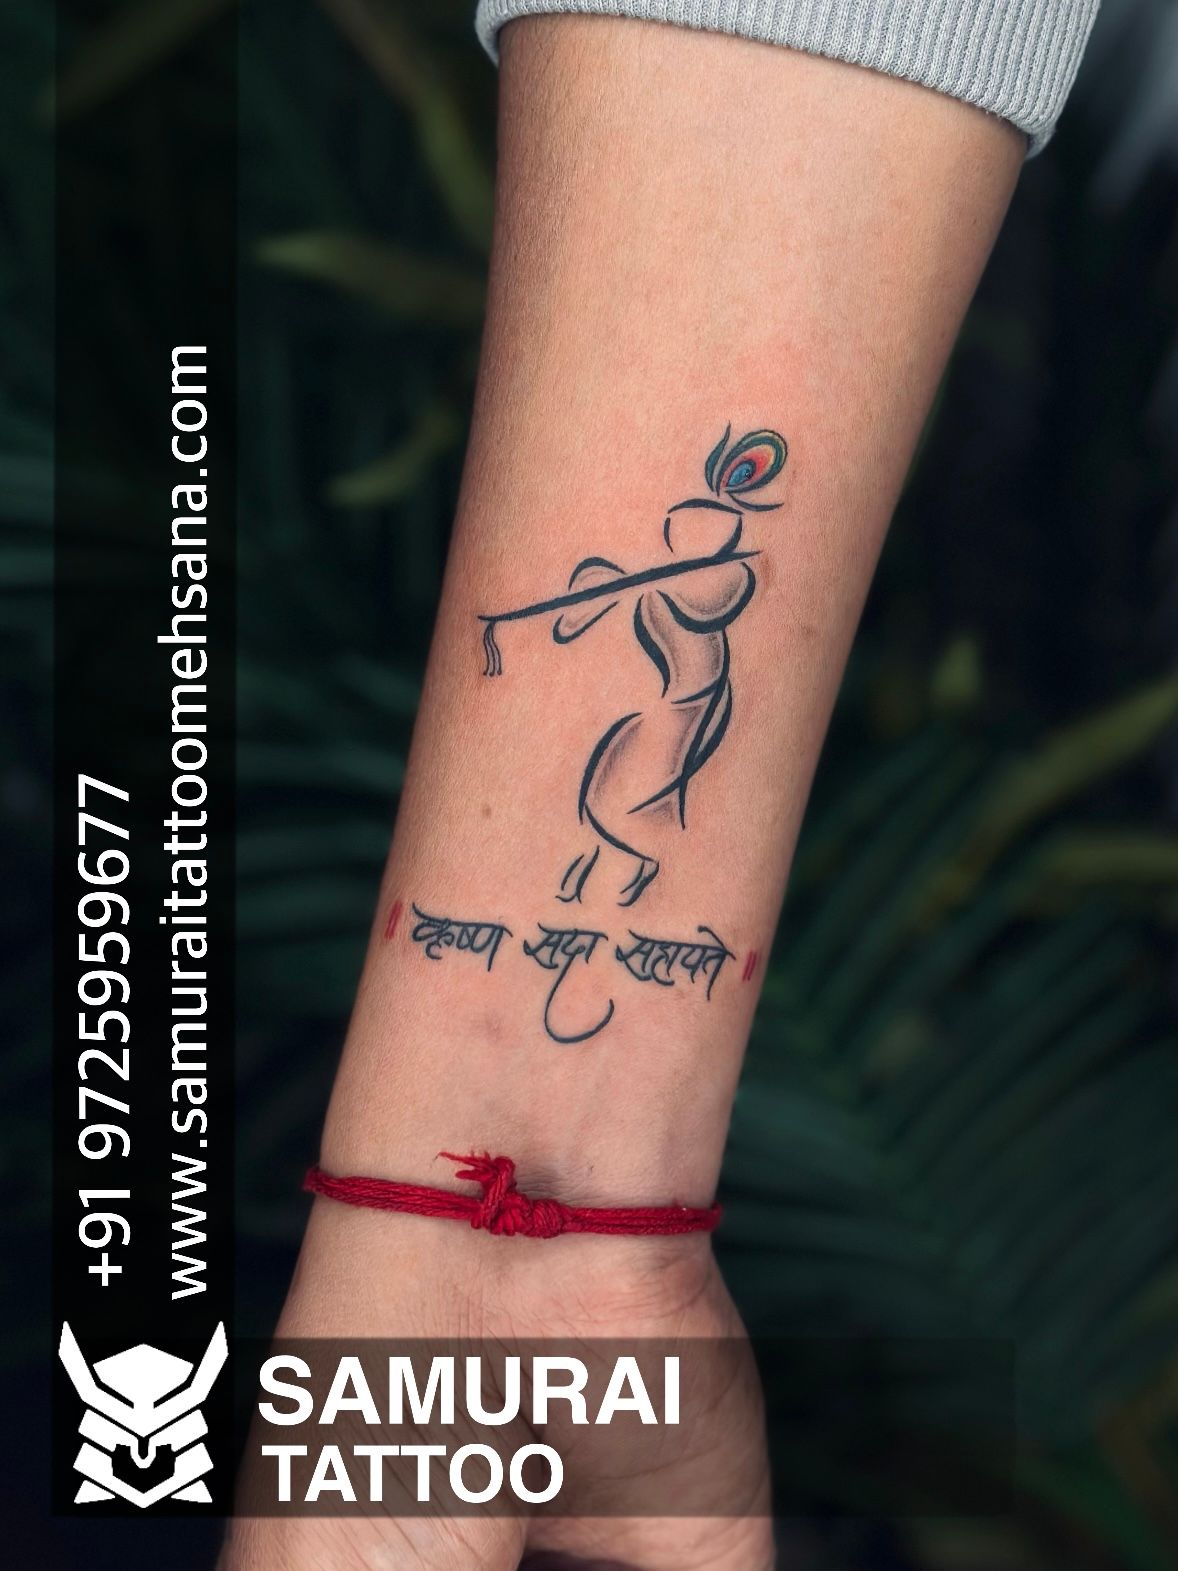 Shree tatoos in Nanpura,Surat - Best Tattoo Artists in Surat - Justdial